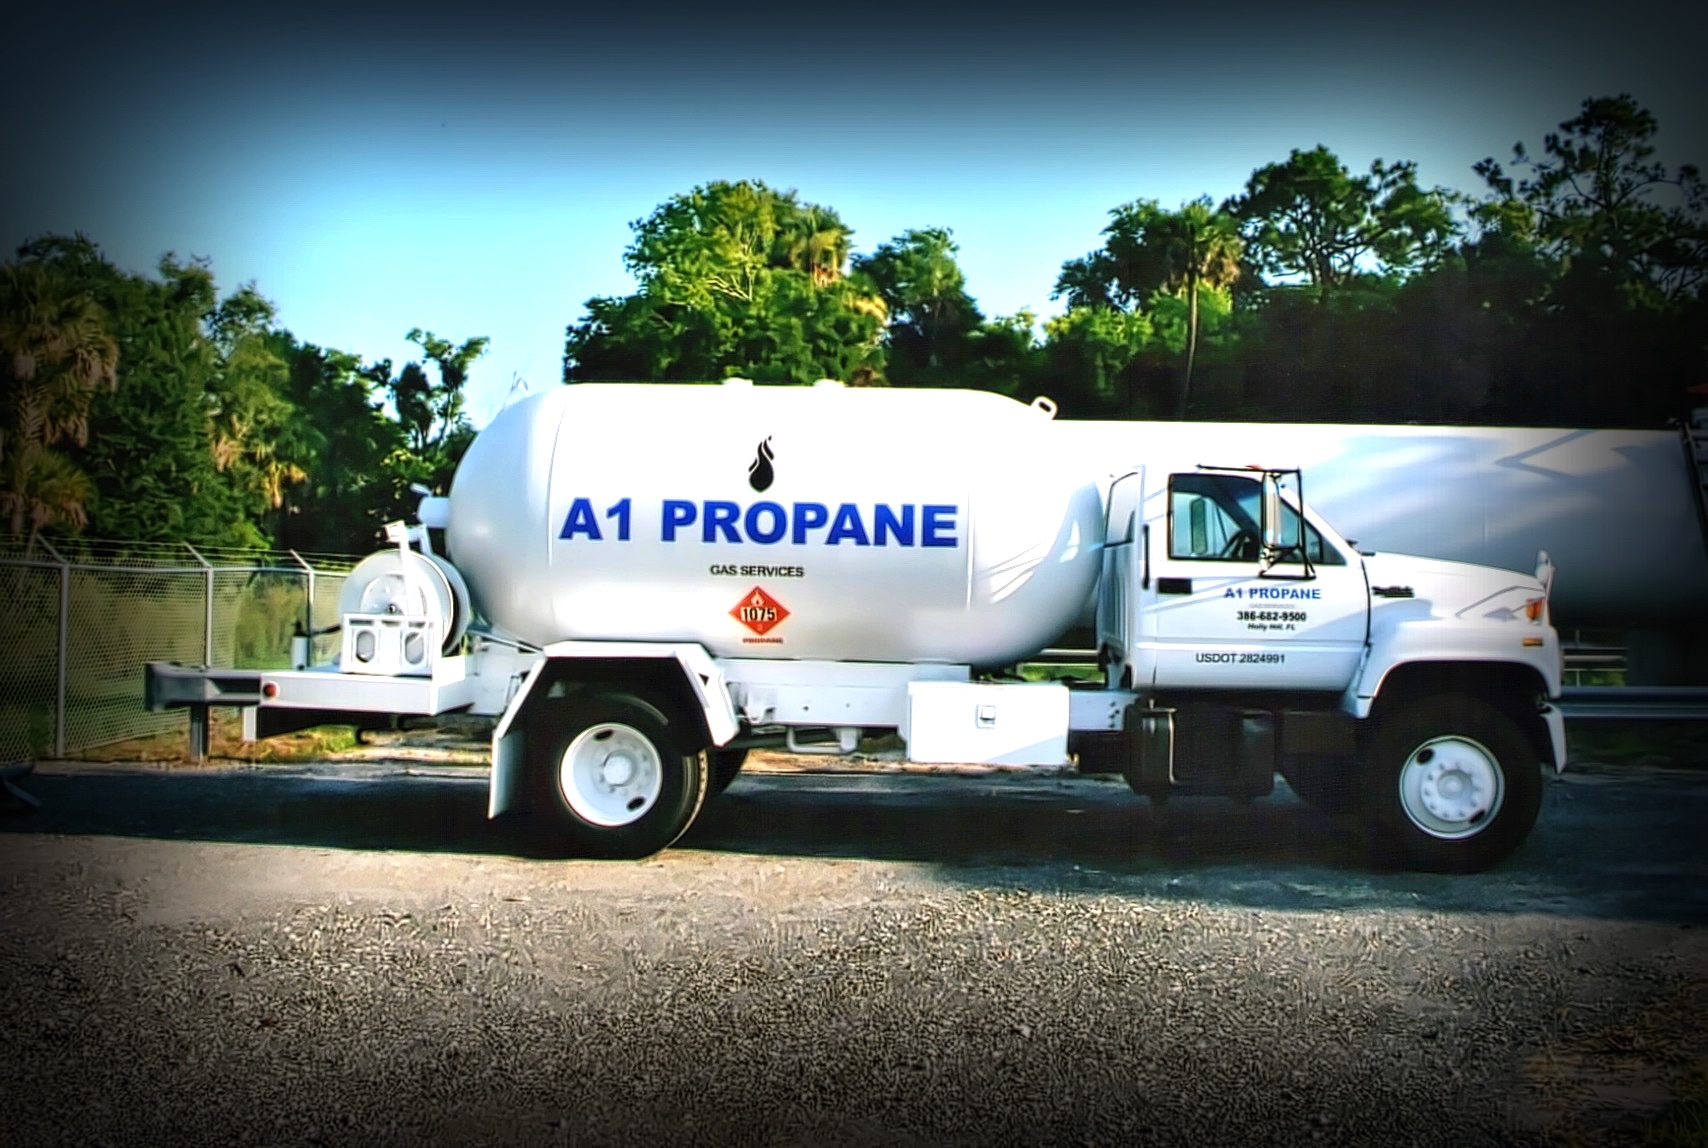 A1 Propane Gas Services